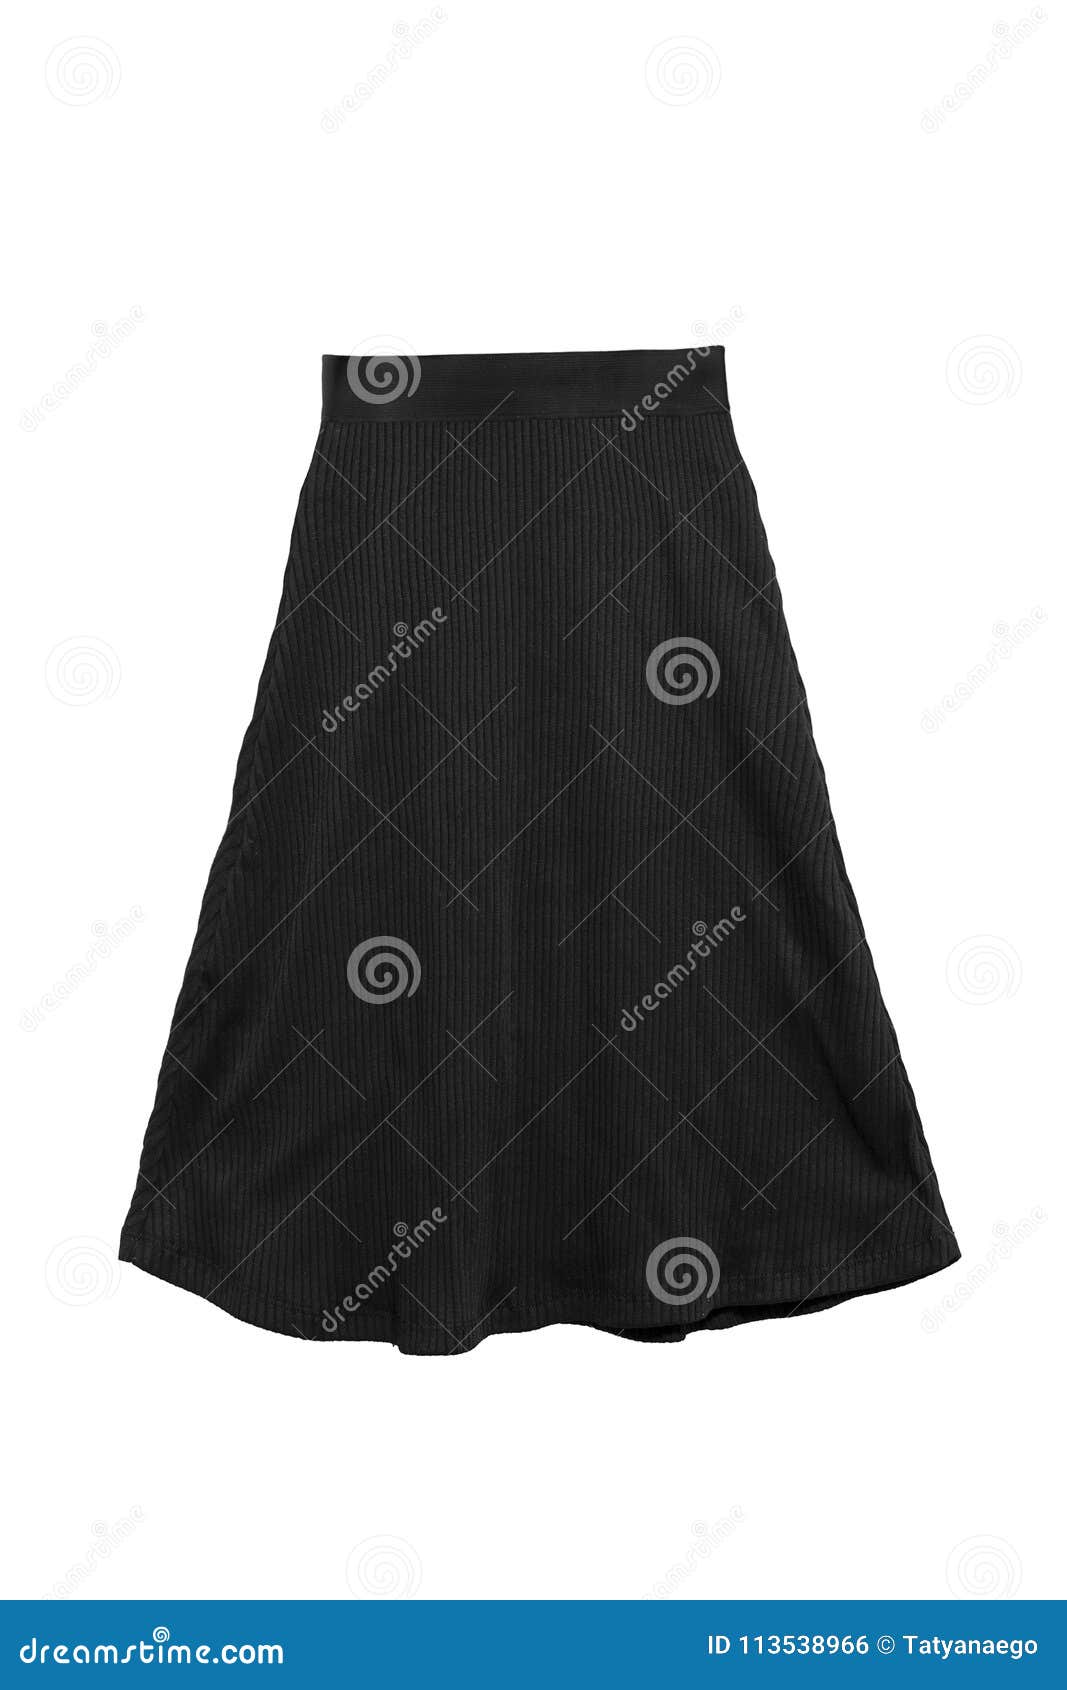 Black skirt isolated stock photo. Image of studio, shopping - 113538966